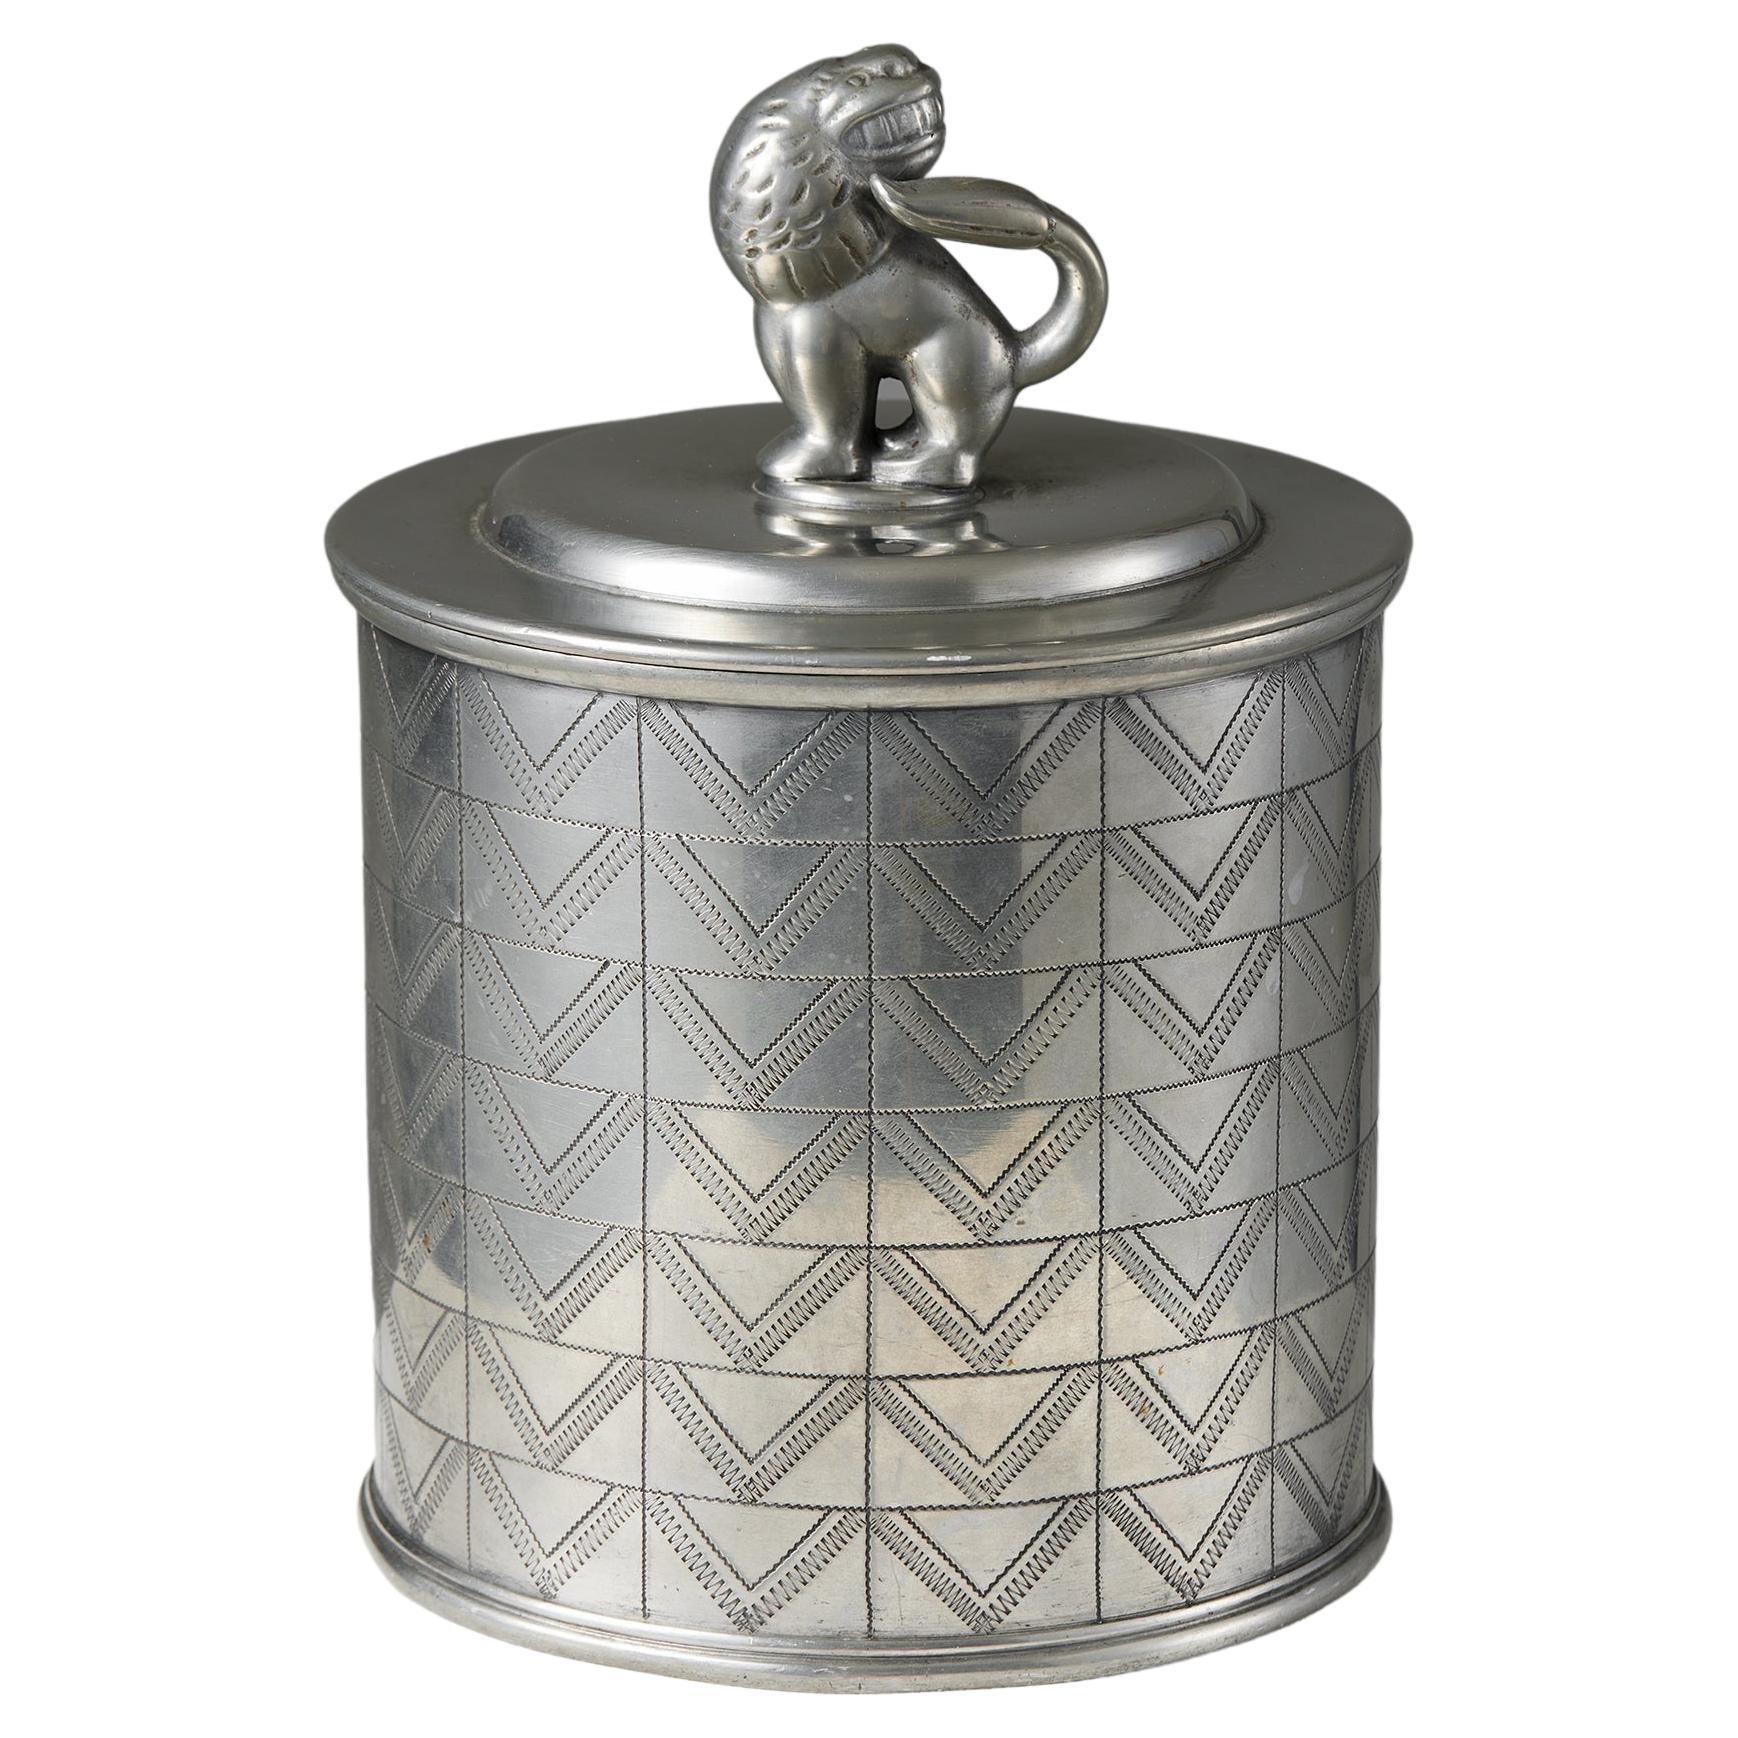 Pewter Jar with Lid Designed by Estrid Ericson for Svenskt Tenn, Sweden, 1930 For Sale